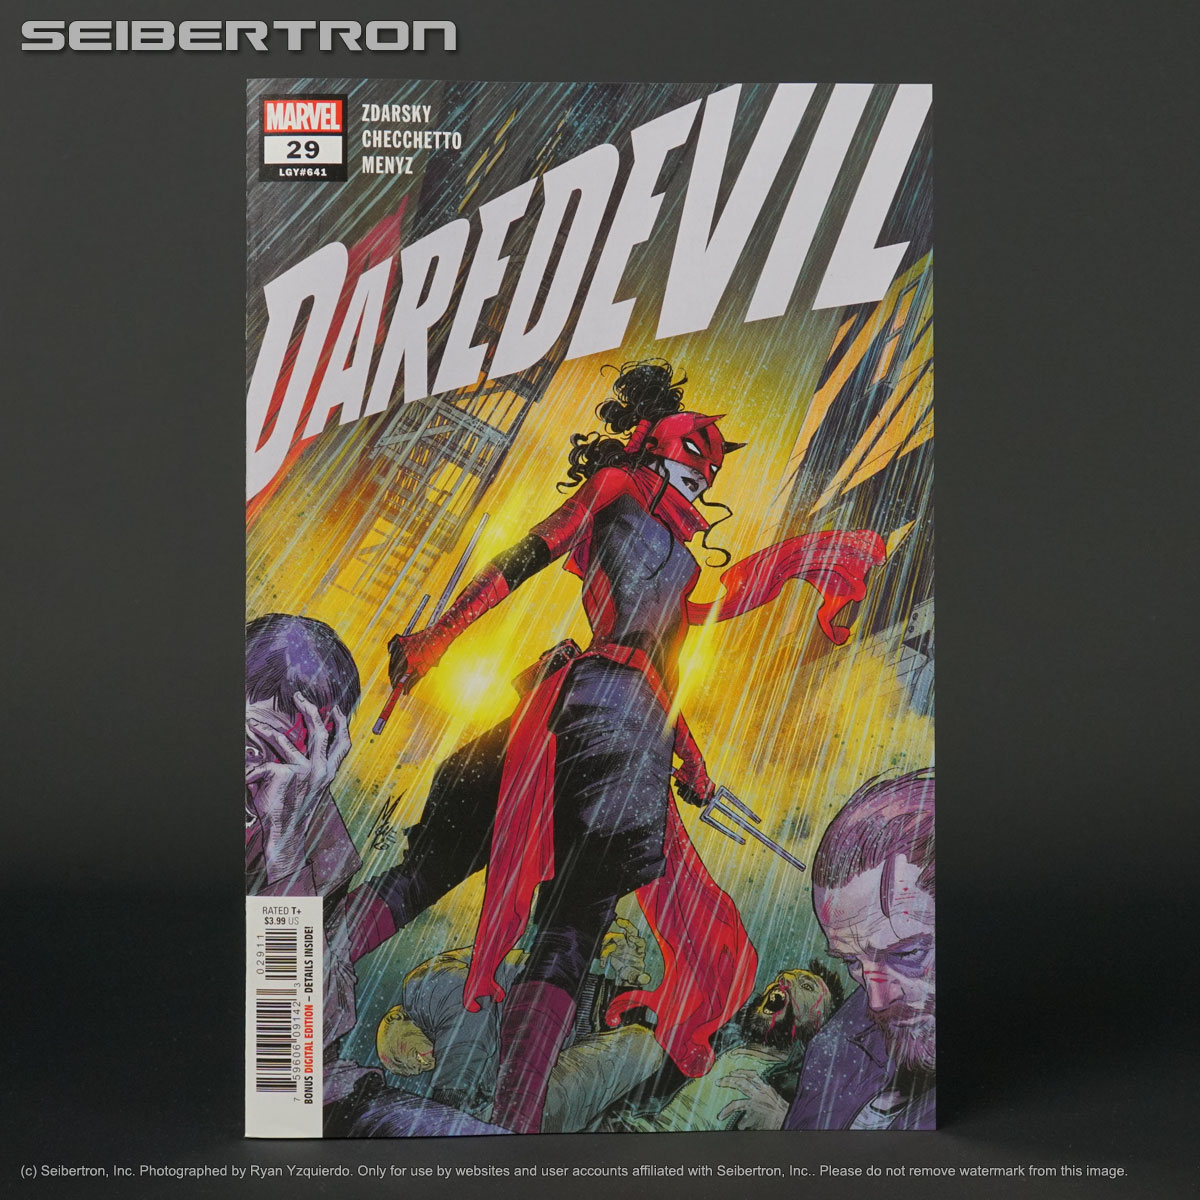 DAREDEVIL #29 Marvel Comics 2021 FEB210641 (W) Zdarsky (A/CA) Checchetto